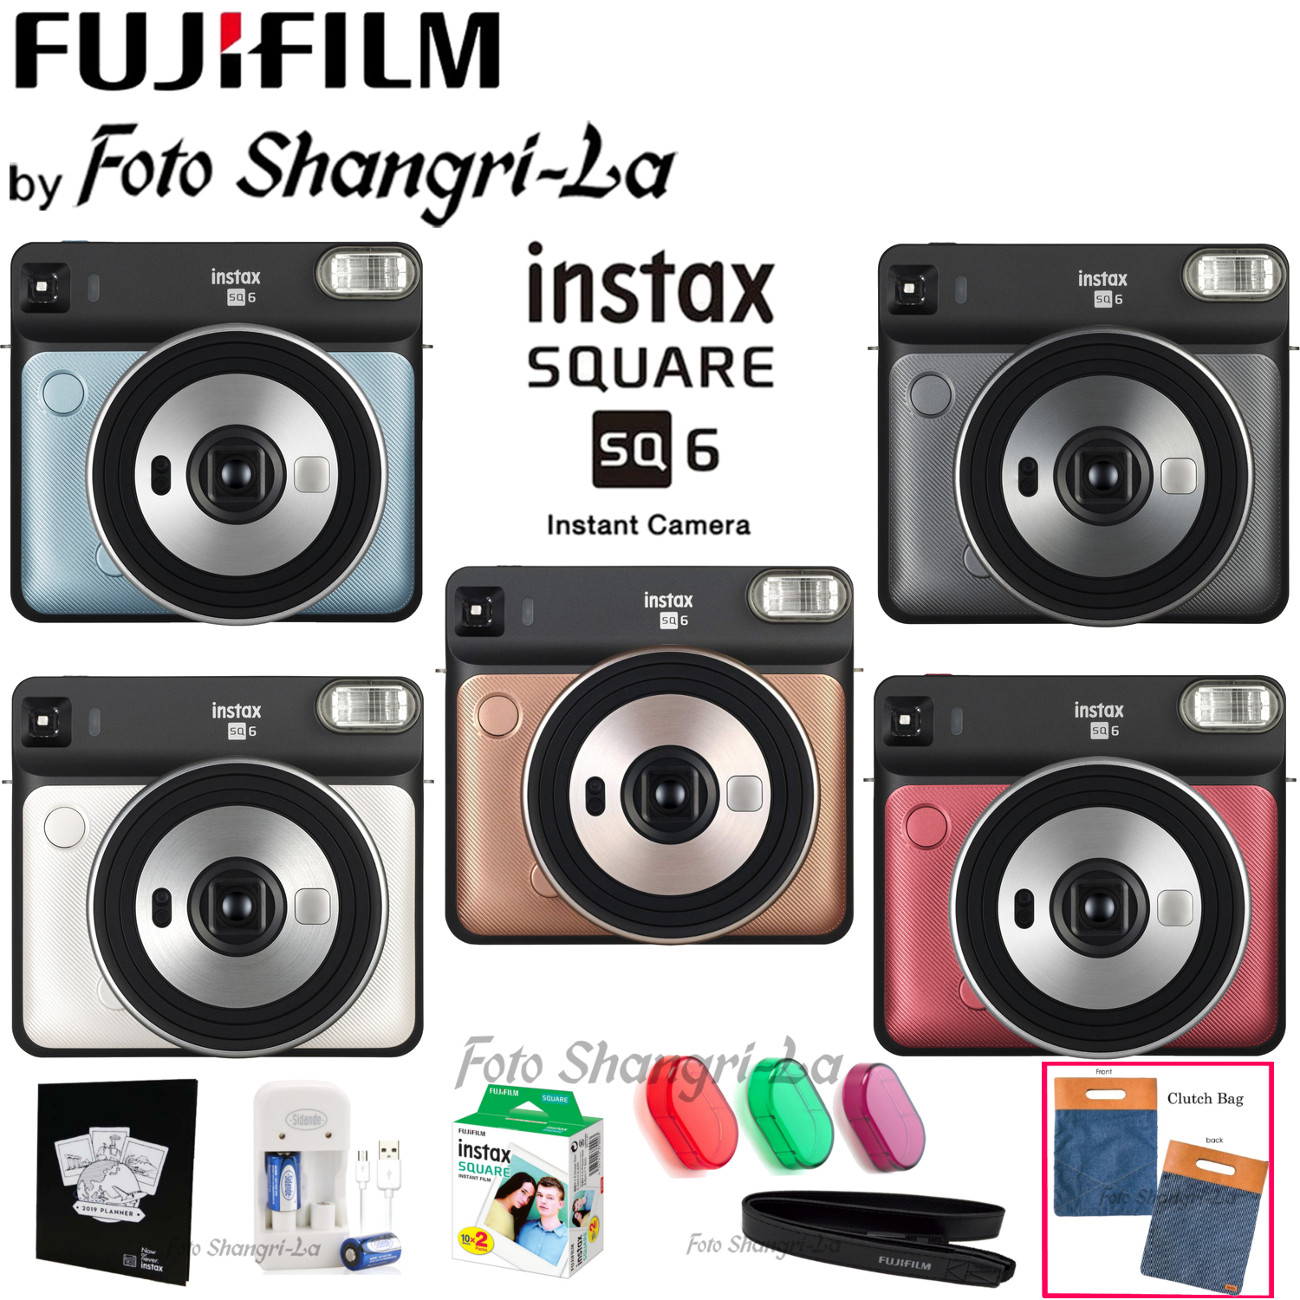 Fujifilm Instax Mini Instant Film Twin Pack : Target